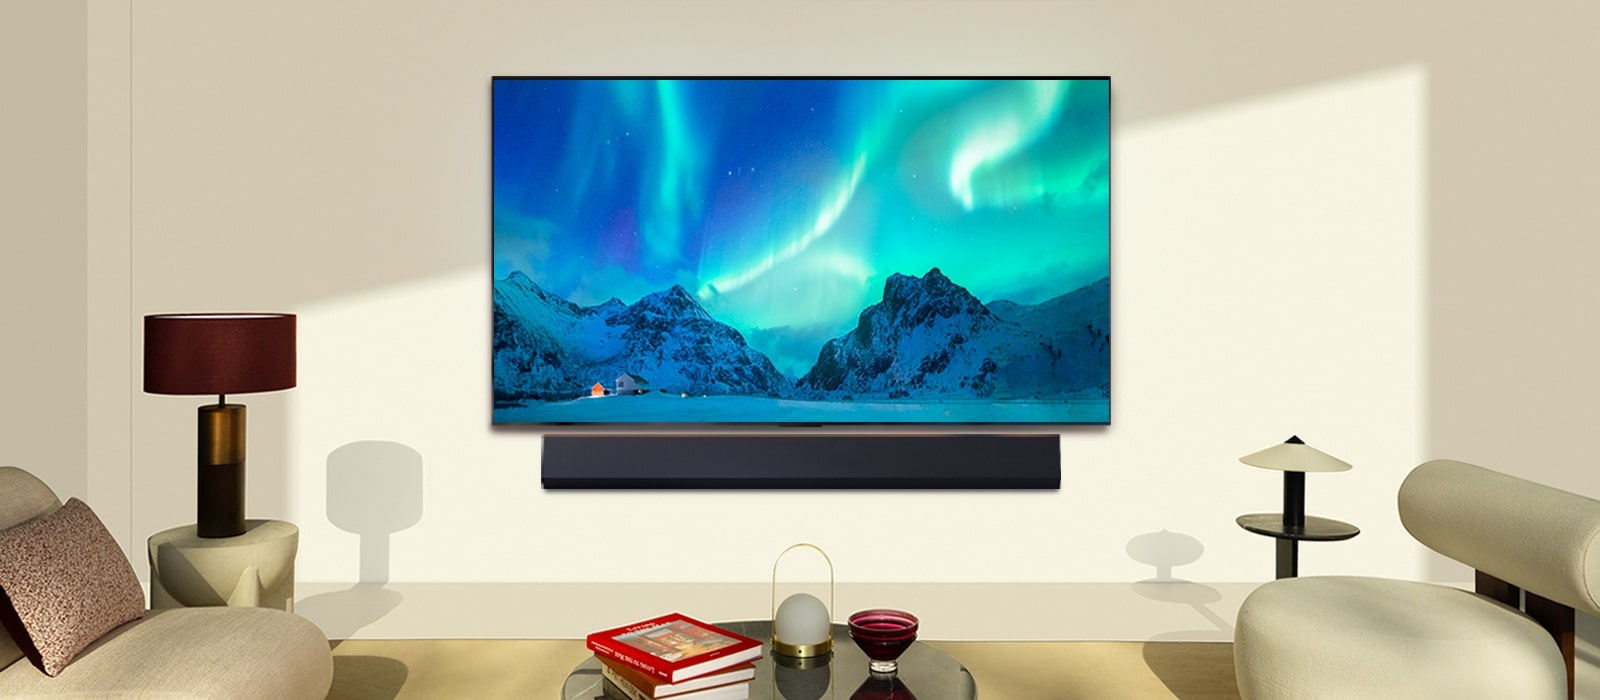 LG OLED TV och LG Soundbar i ett modernt vardagsrum dagtid. Skärmbilden av norrskenet visas med idealiska ljusnivåer.